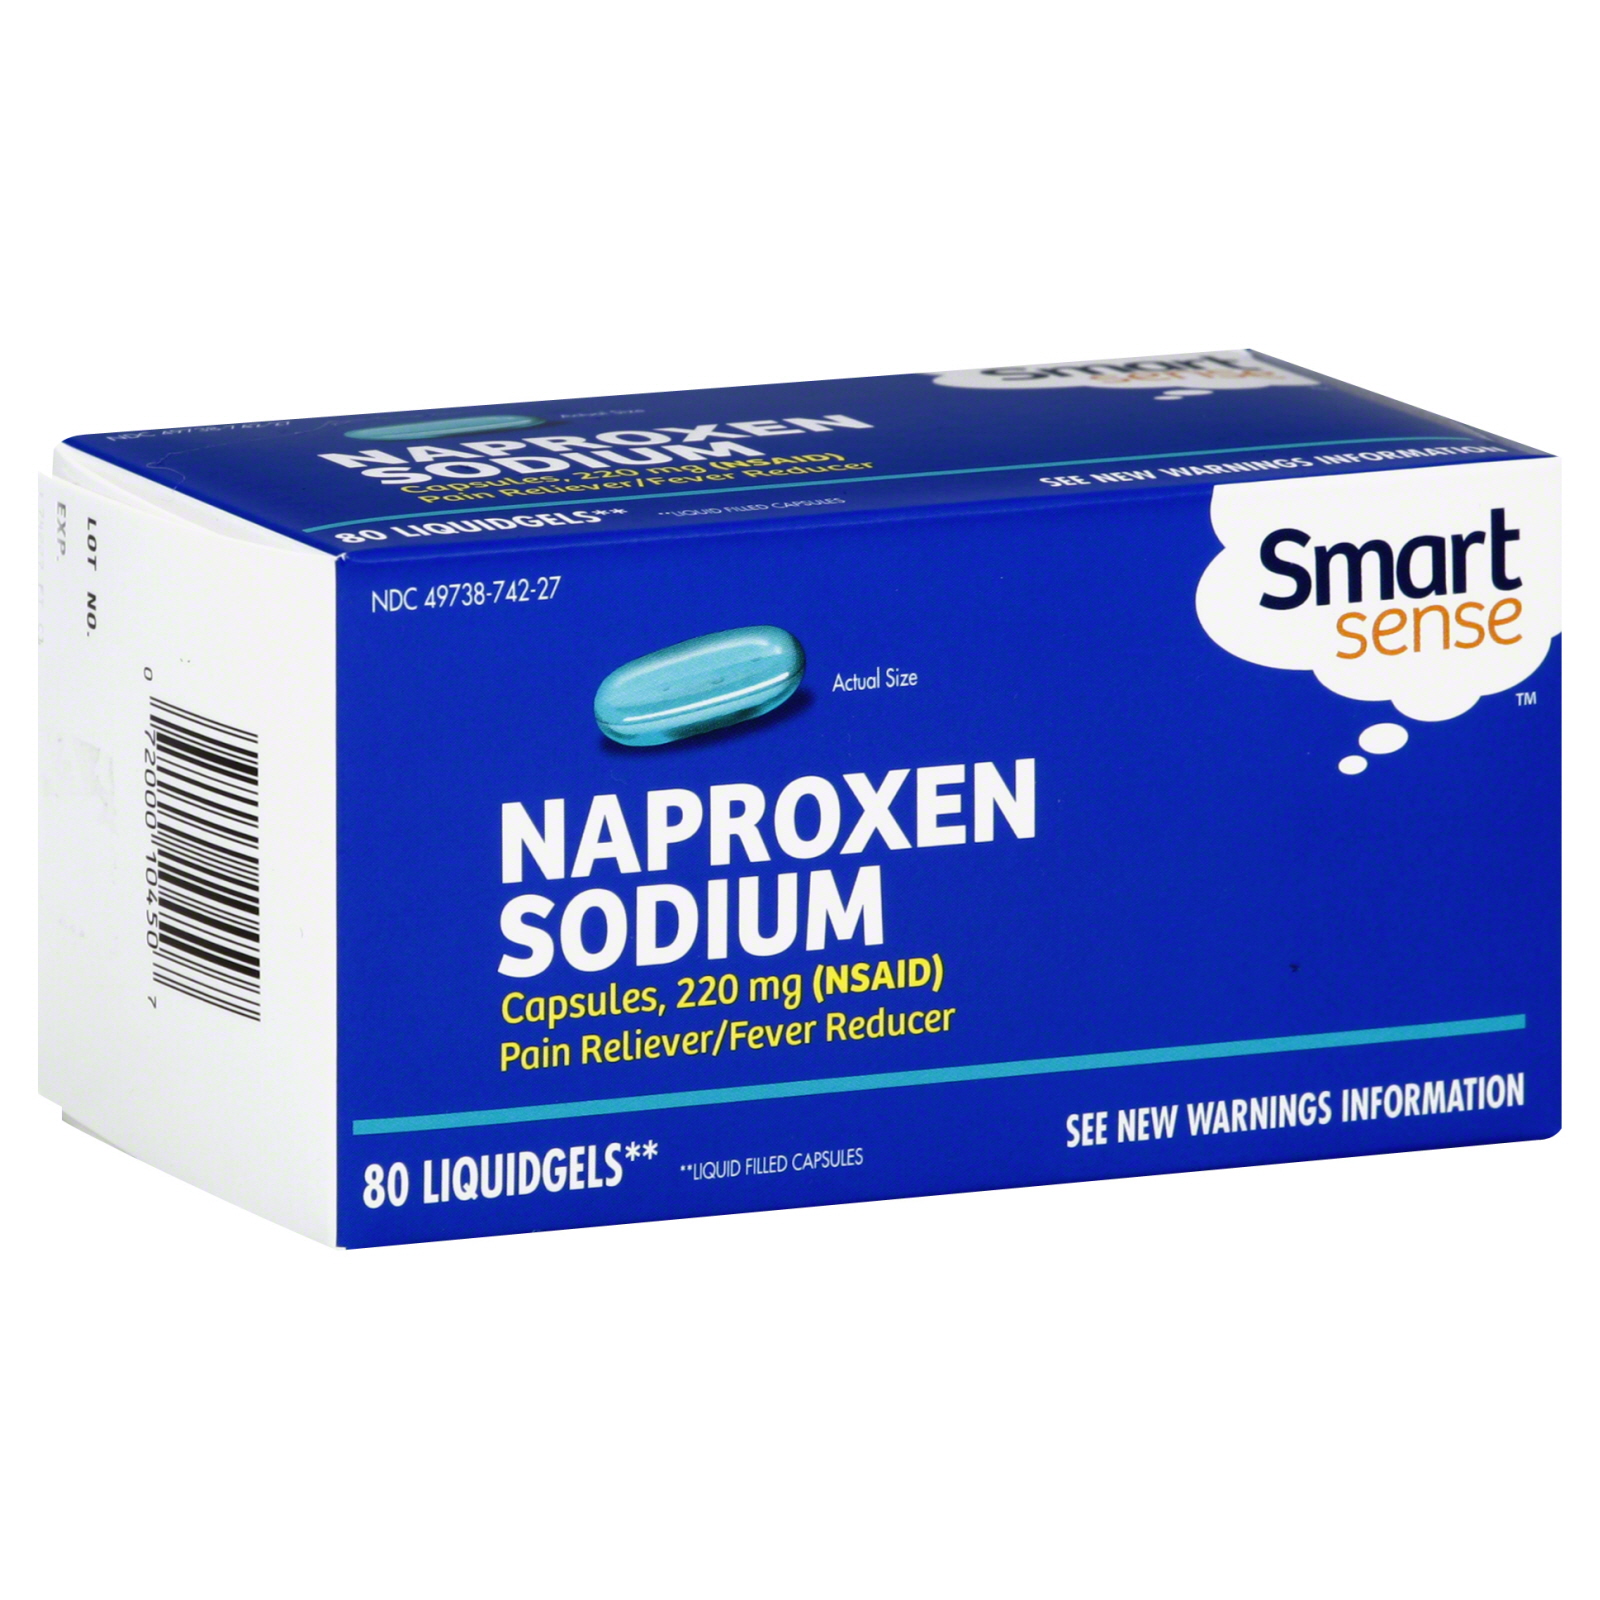 Smart Sense Naproxen Sodium, 220 mg, 80 Liquidgels